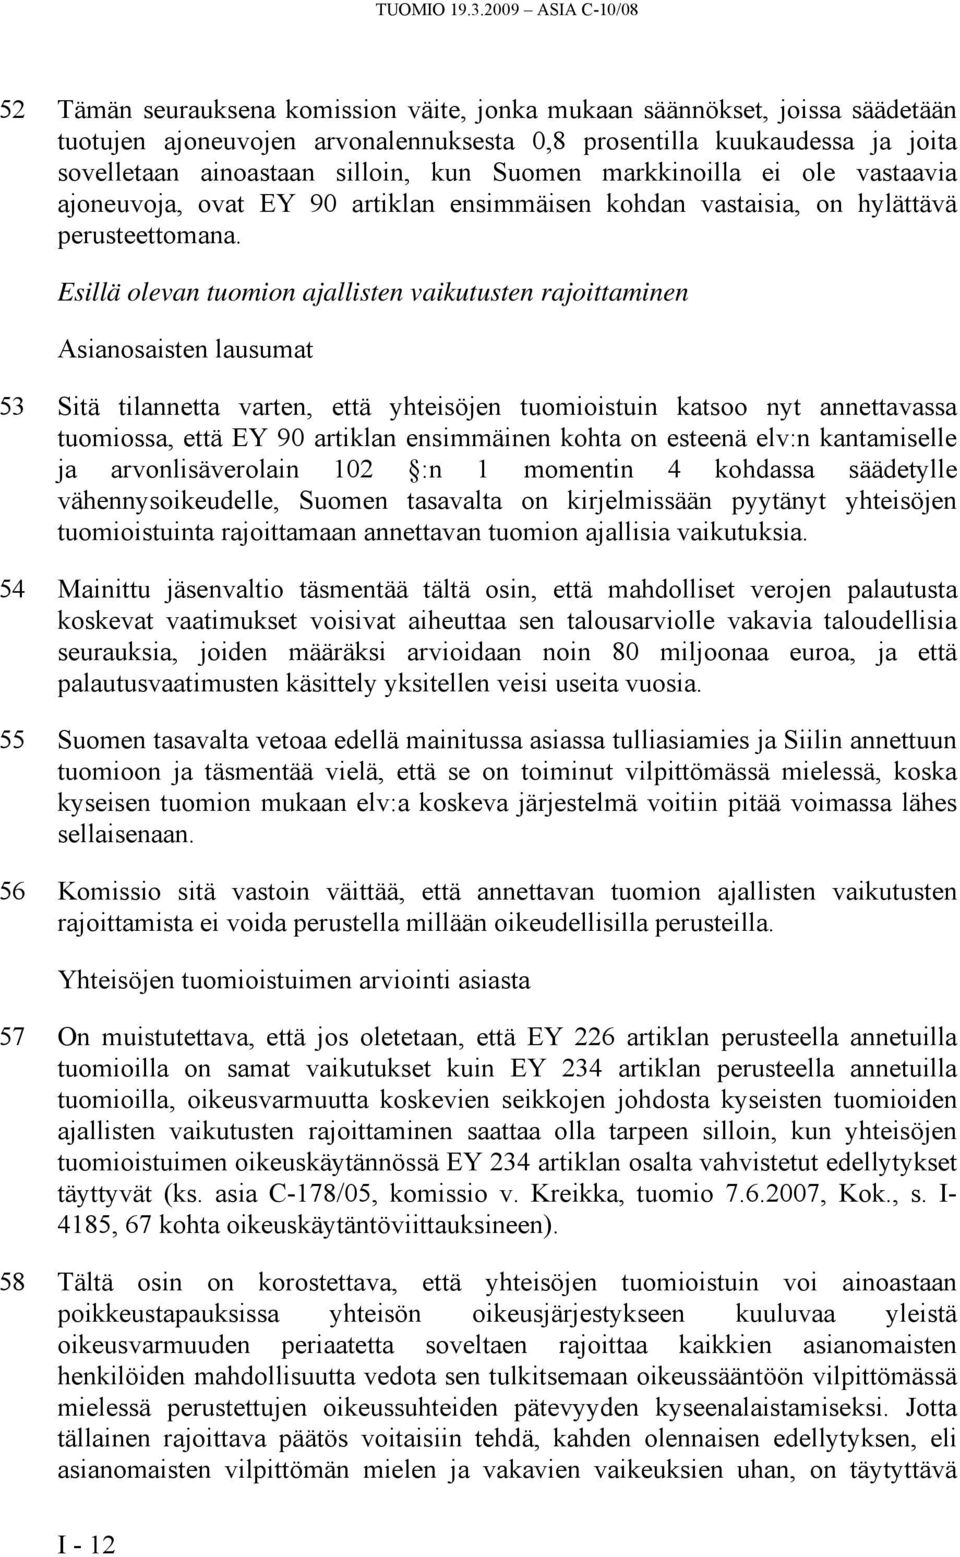 silloin, kun Suomen markkinoilla ei ole vastaavia ajoneuvoja, ovat EY 90 artiklan ensimmäisen kohdan vastaisia, on hylättävä perusteettomana.